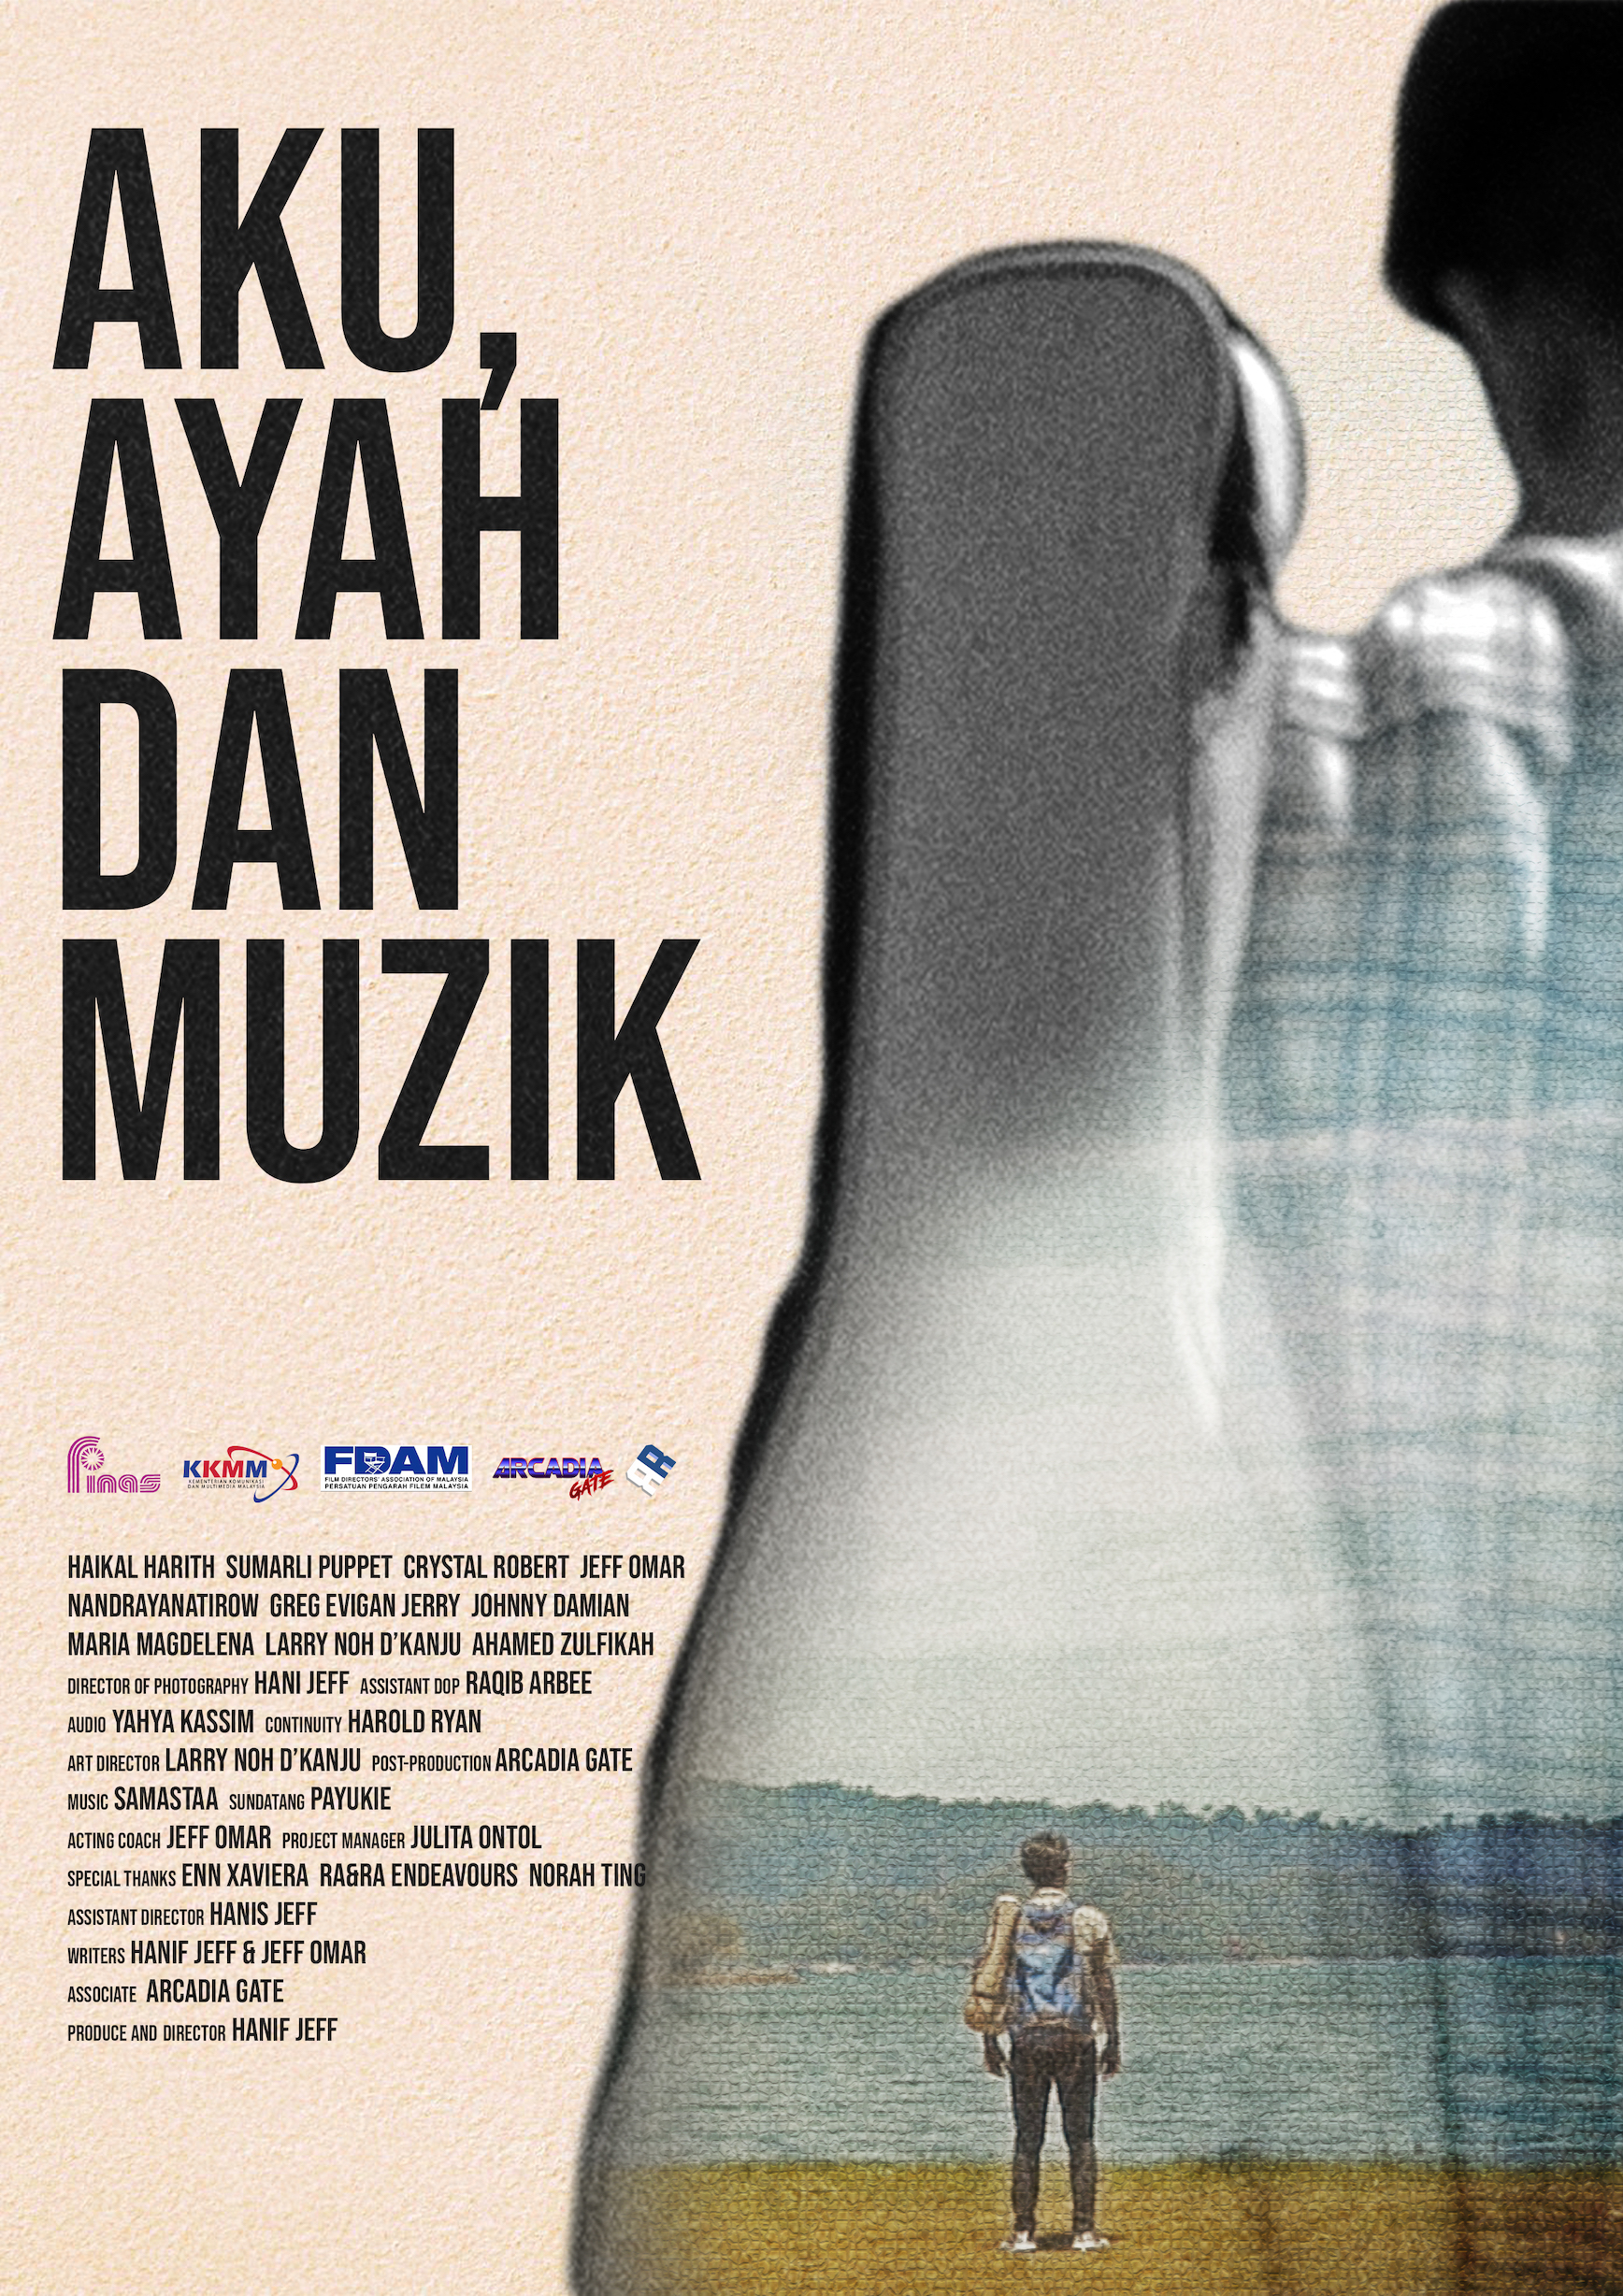 01. Aku Ayah dan Muzik by Mohd Hanif Fikri